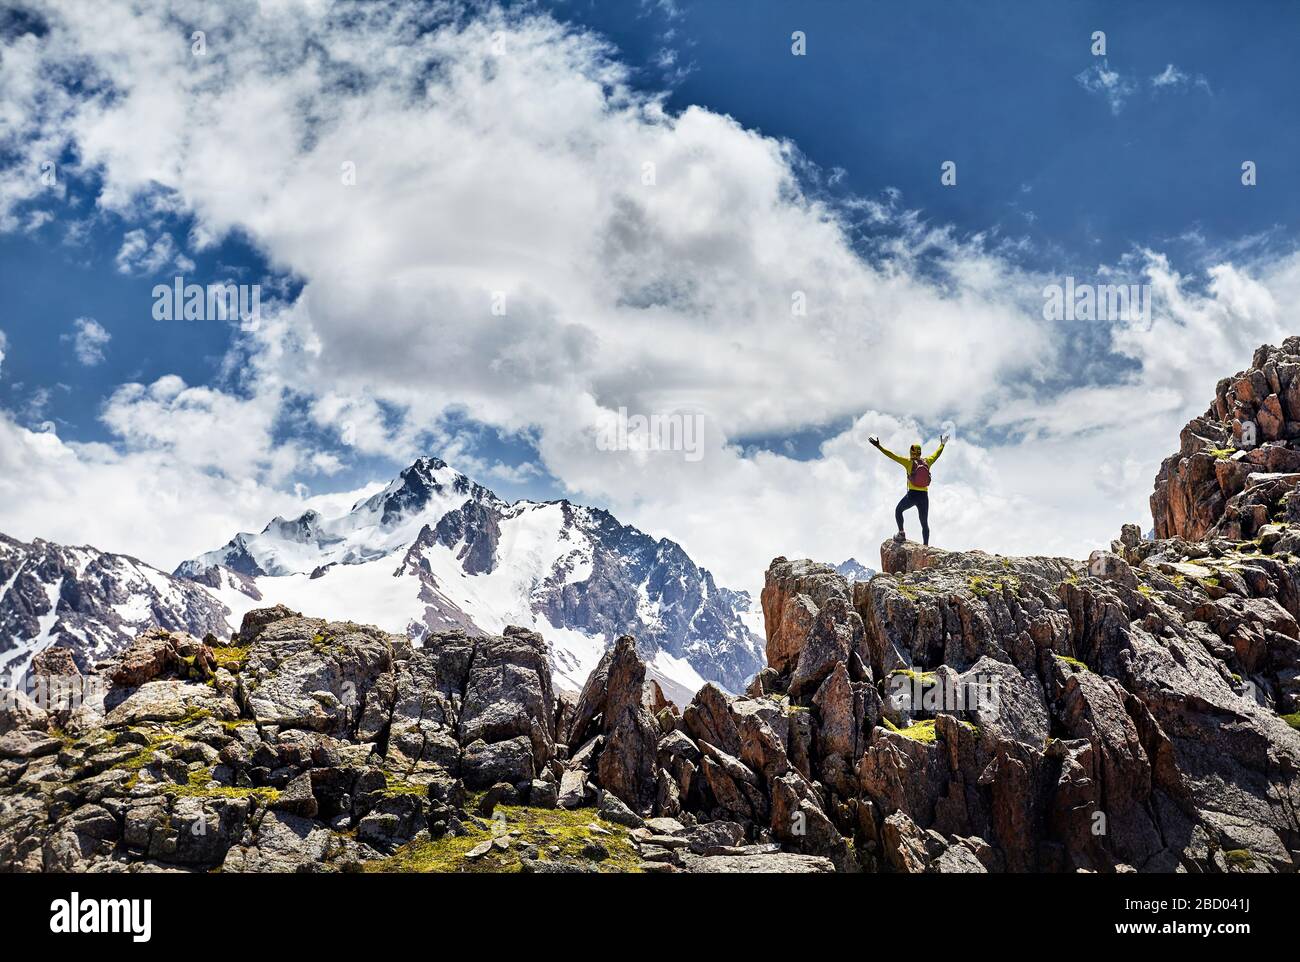 Escursionista in camicia gialla con zaino in piedi sulla roccia con le mani che si alzano godendo la vista delle montagne innevate su sfondo cielo nuvoloso Foto Stock